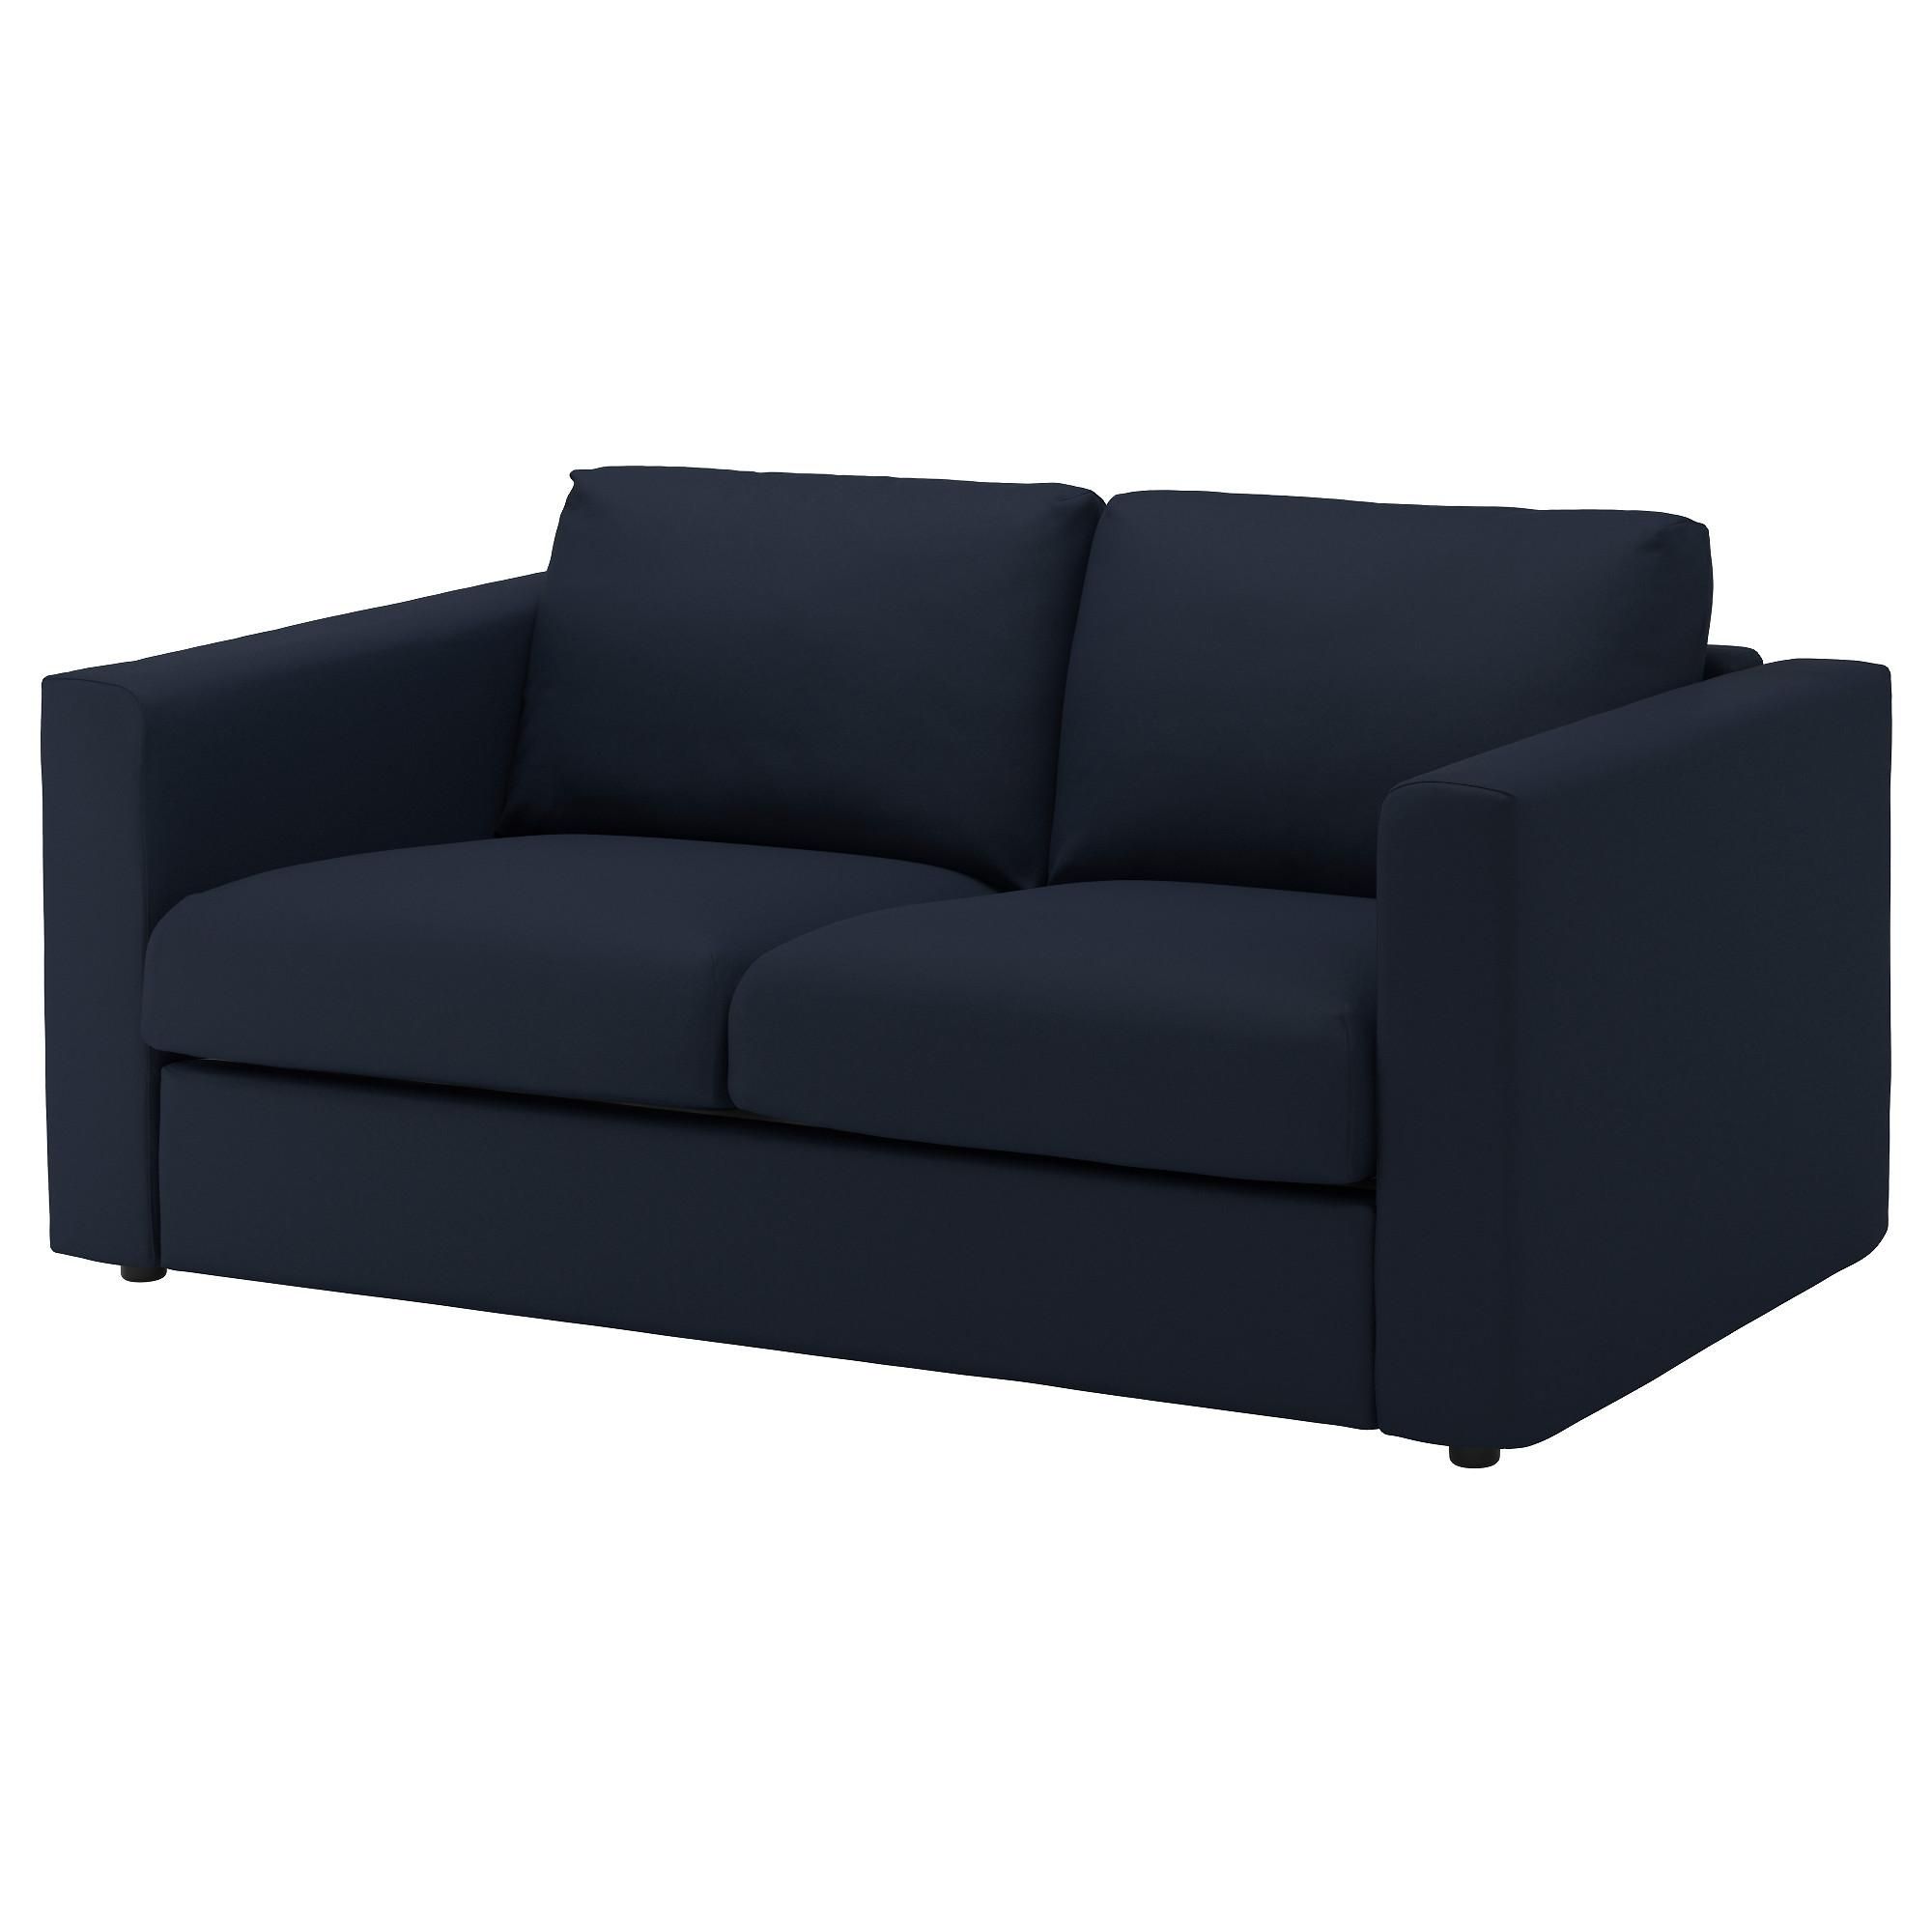 Two Seater Sofas | Ikea Ireland – Dublin Inside Black 2 Seater Sofas (View 19 of 20)